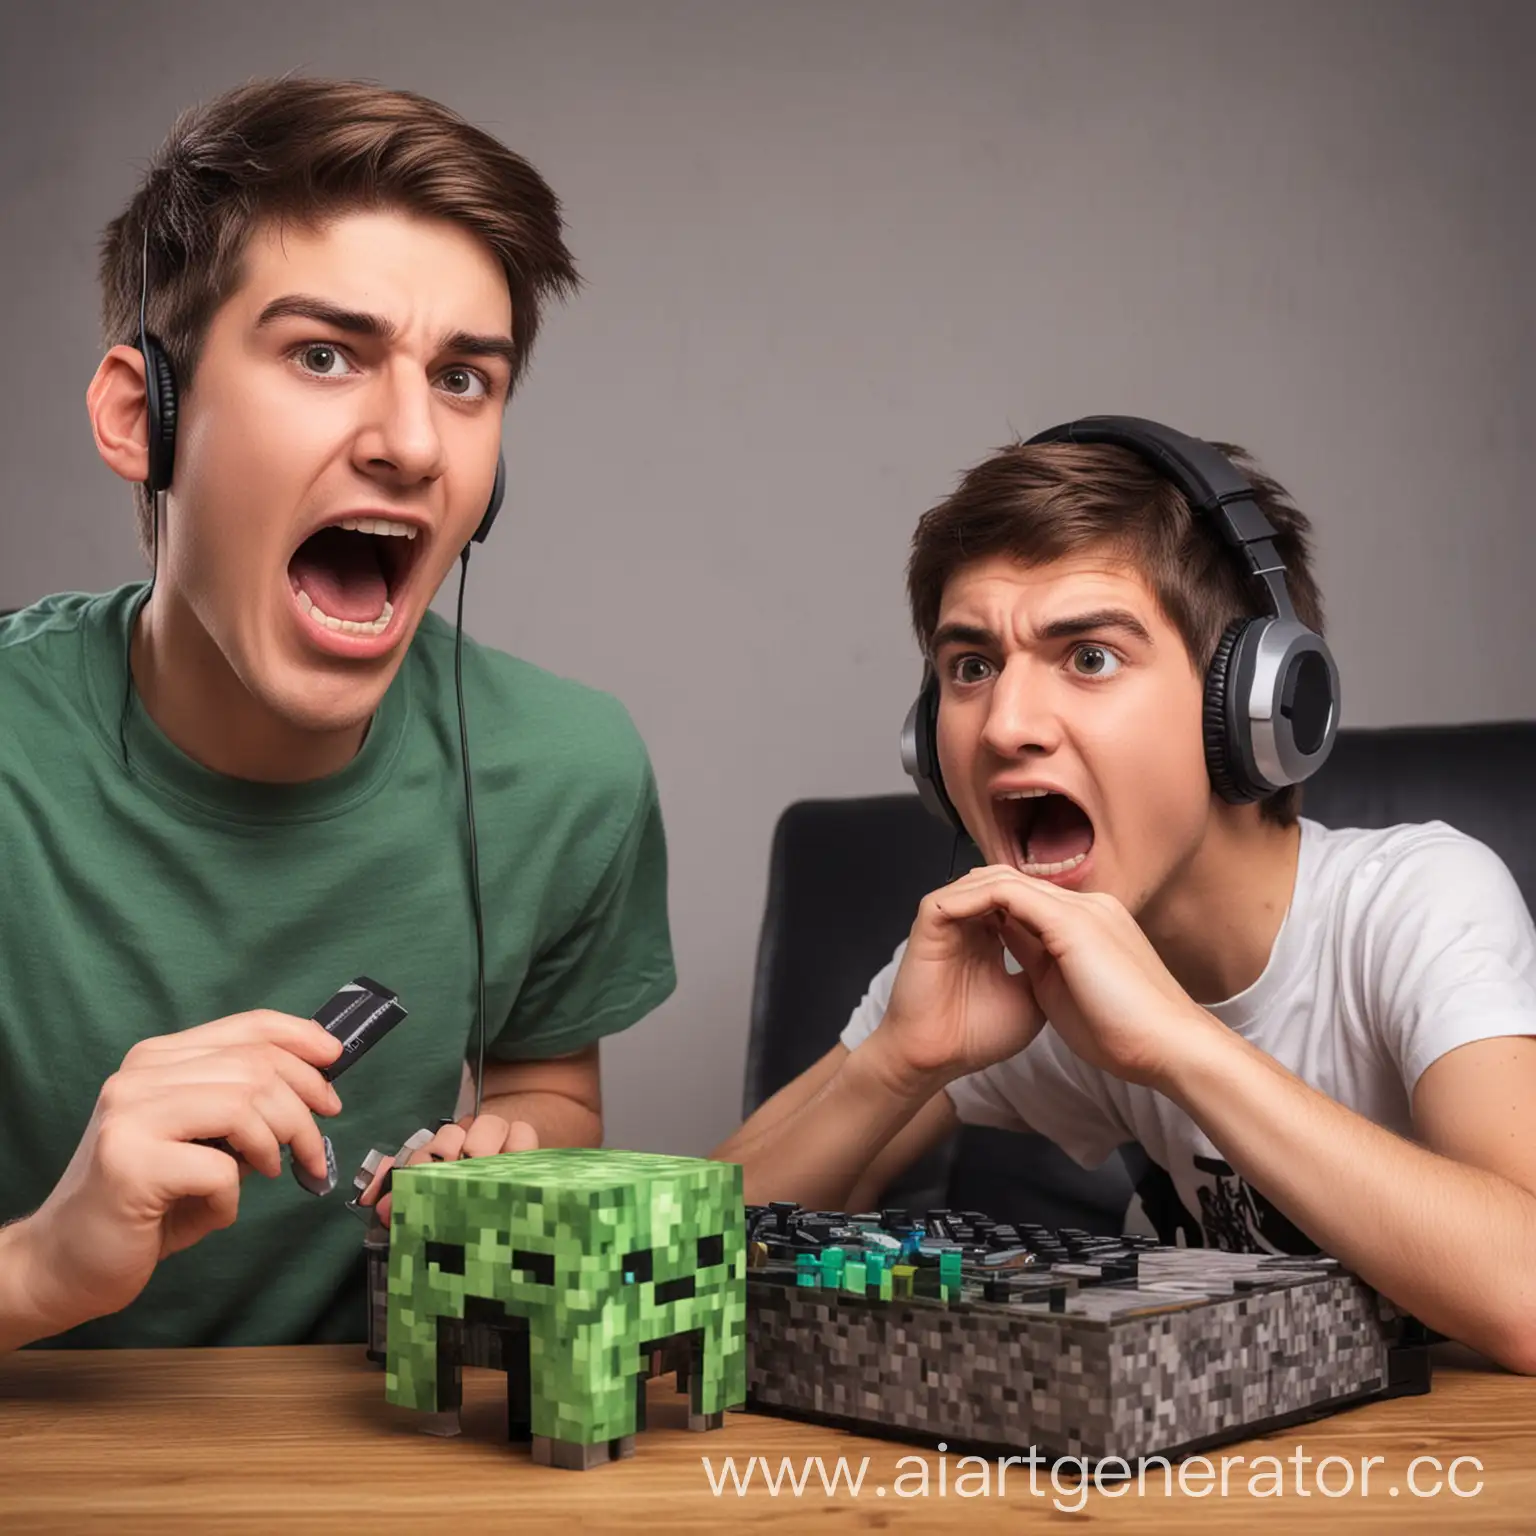 два друга играют в Minecraft, один из них грубый и кричит
